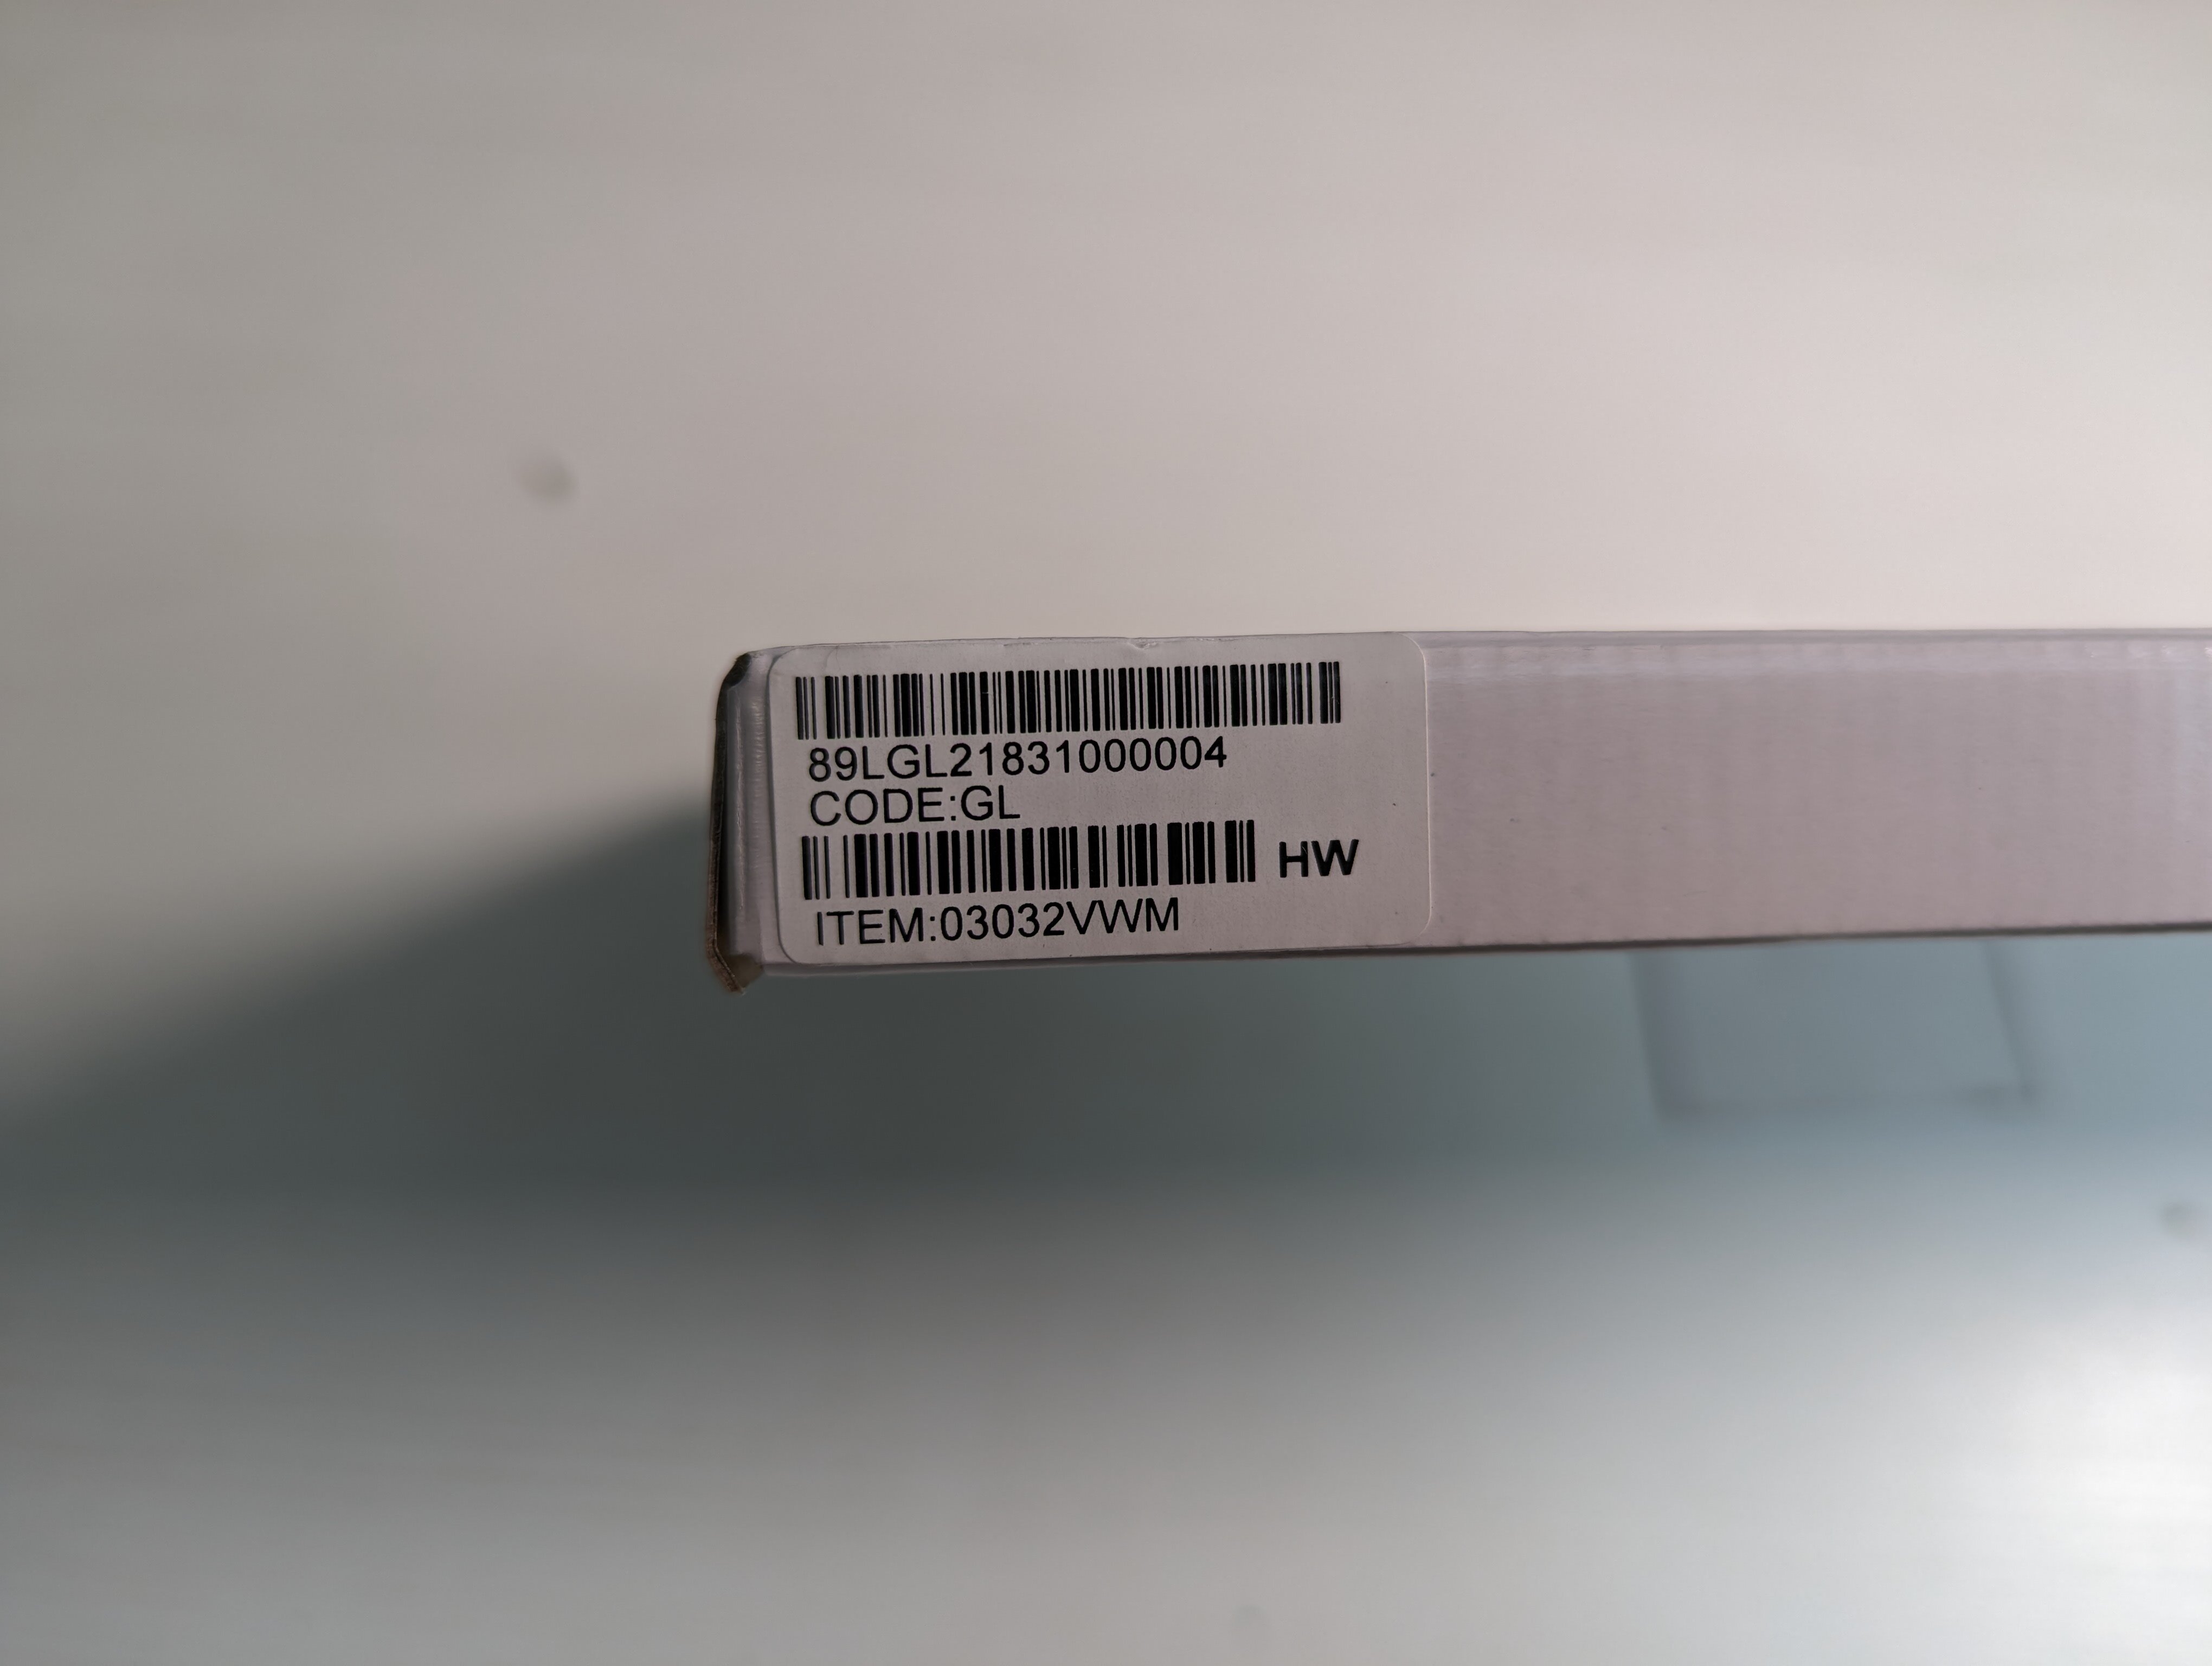 Материнская плата ноутбука Huawei MateBook D (i5-8250U)(03032VWM)